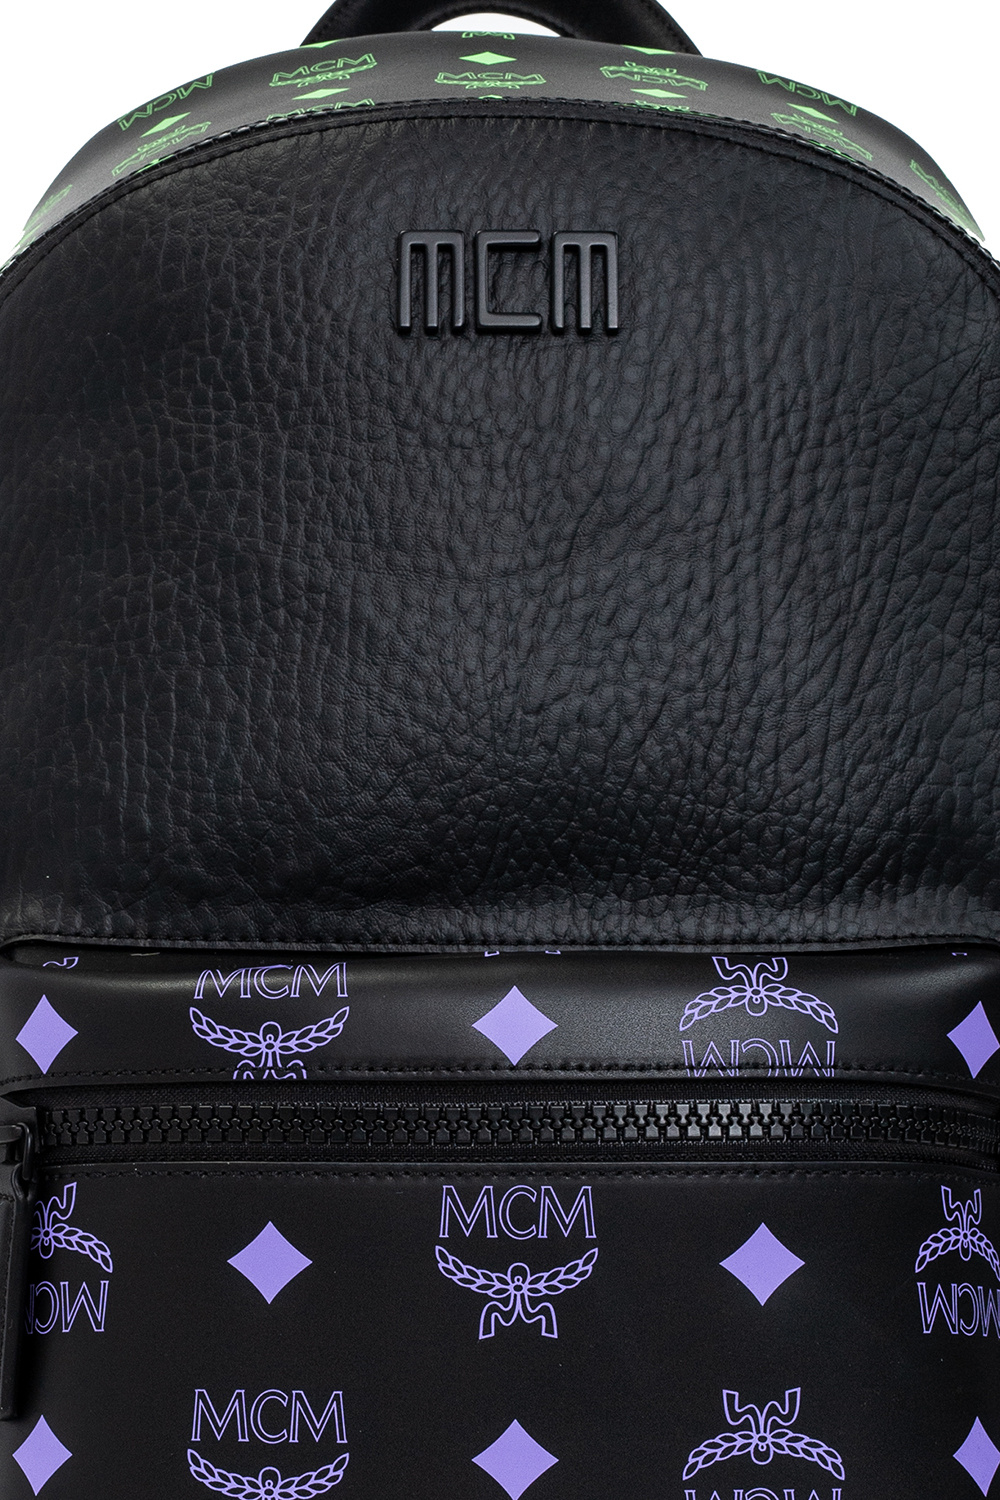 MCM ‘Stark’ backpack